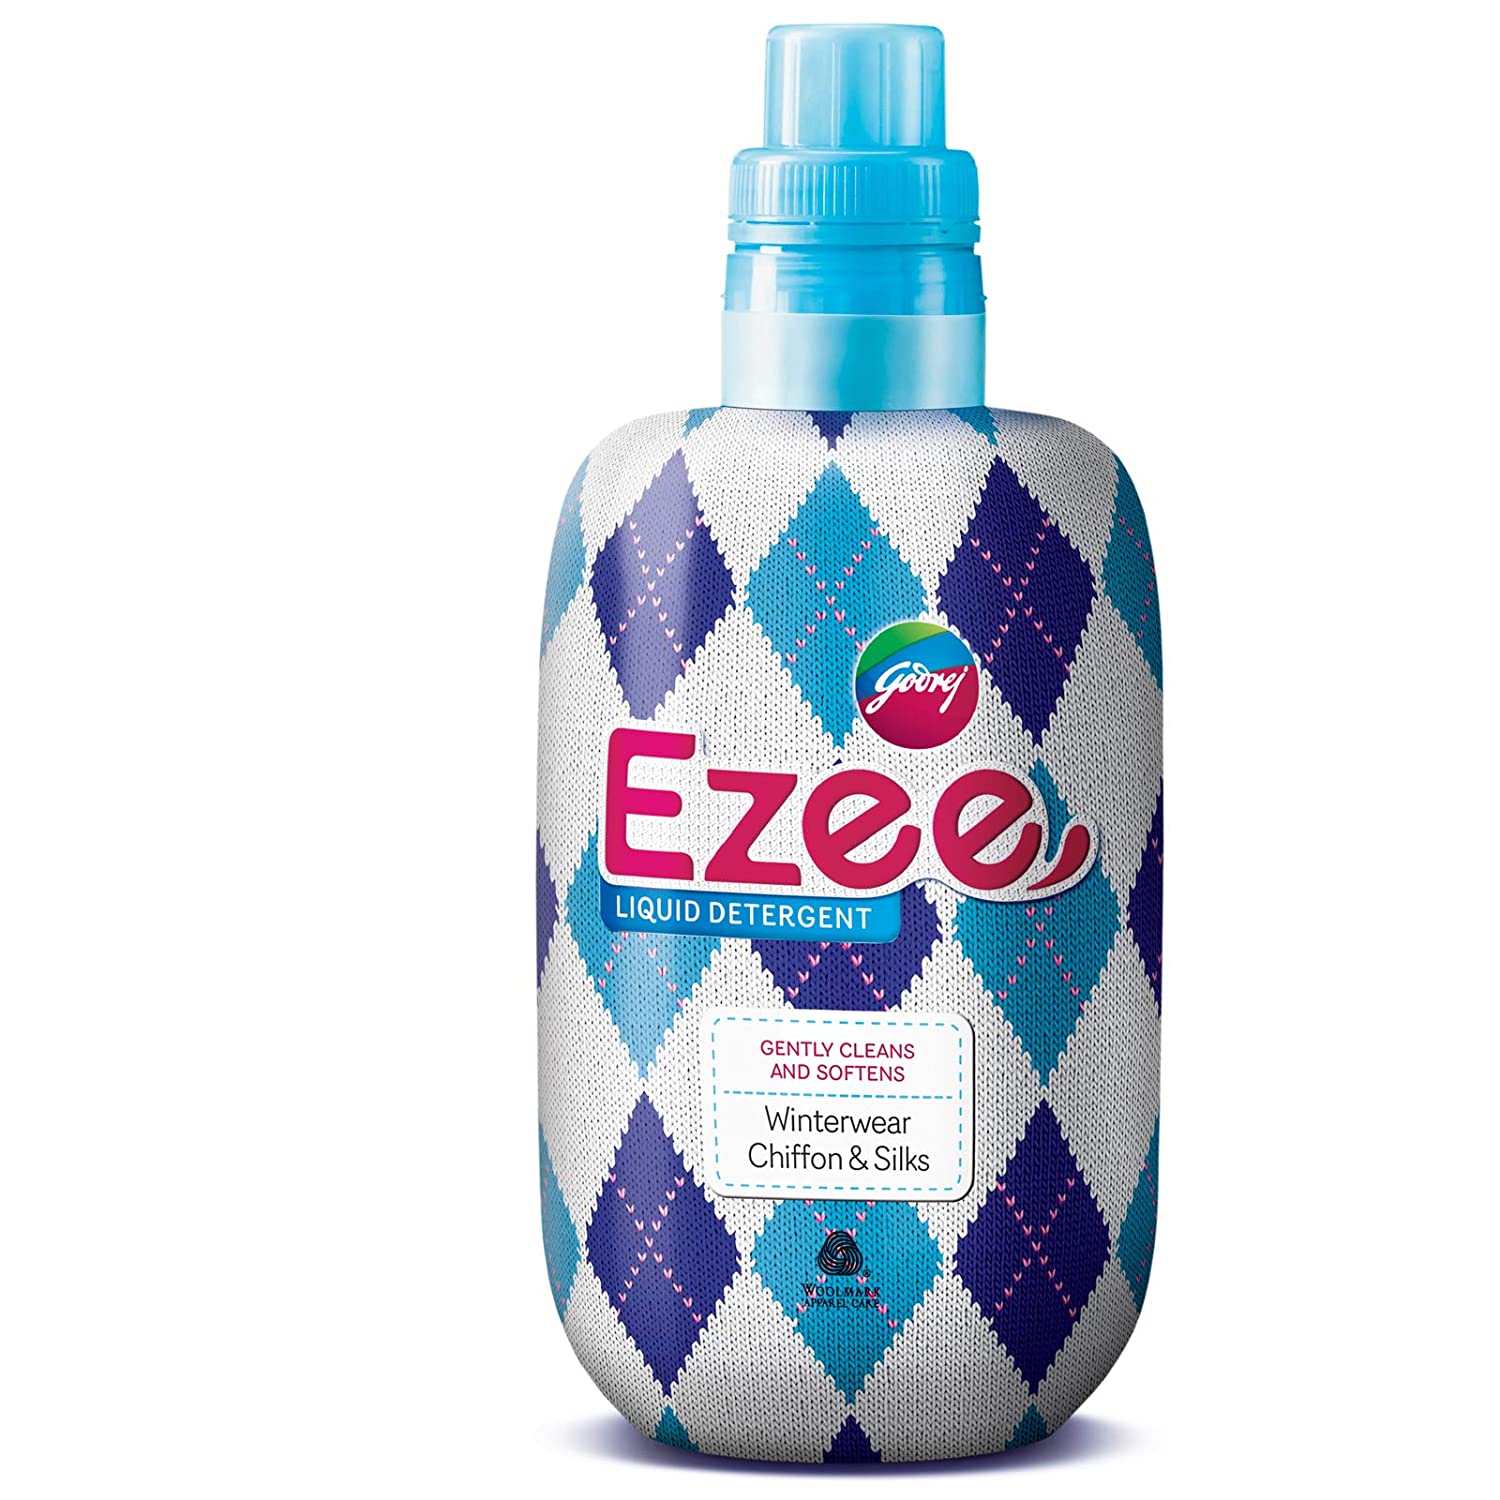 Godrej Ezee Liquid Detergent - Winterwear (200 G + 50 G Free)